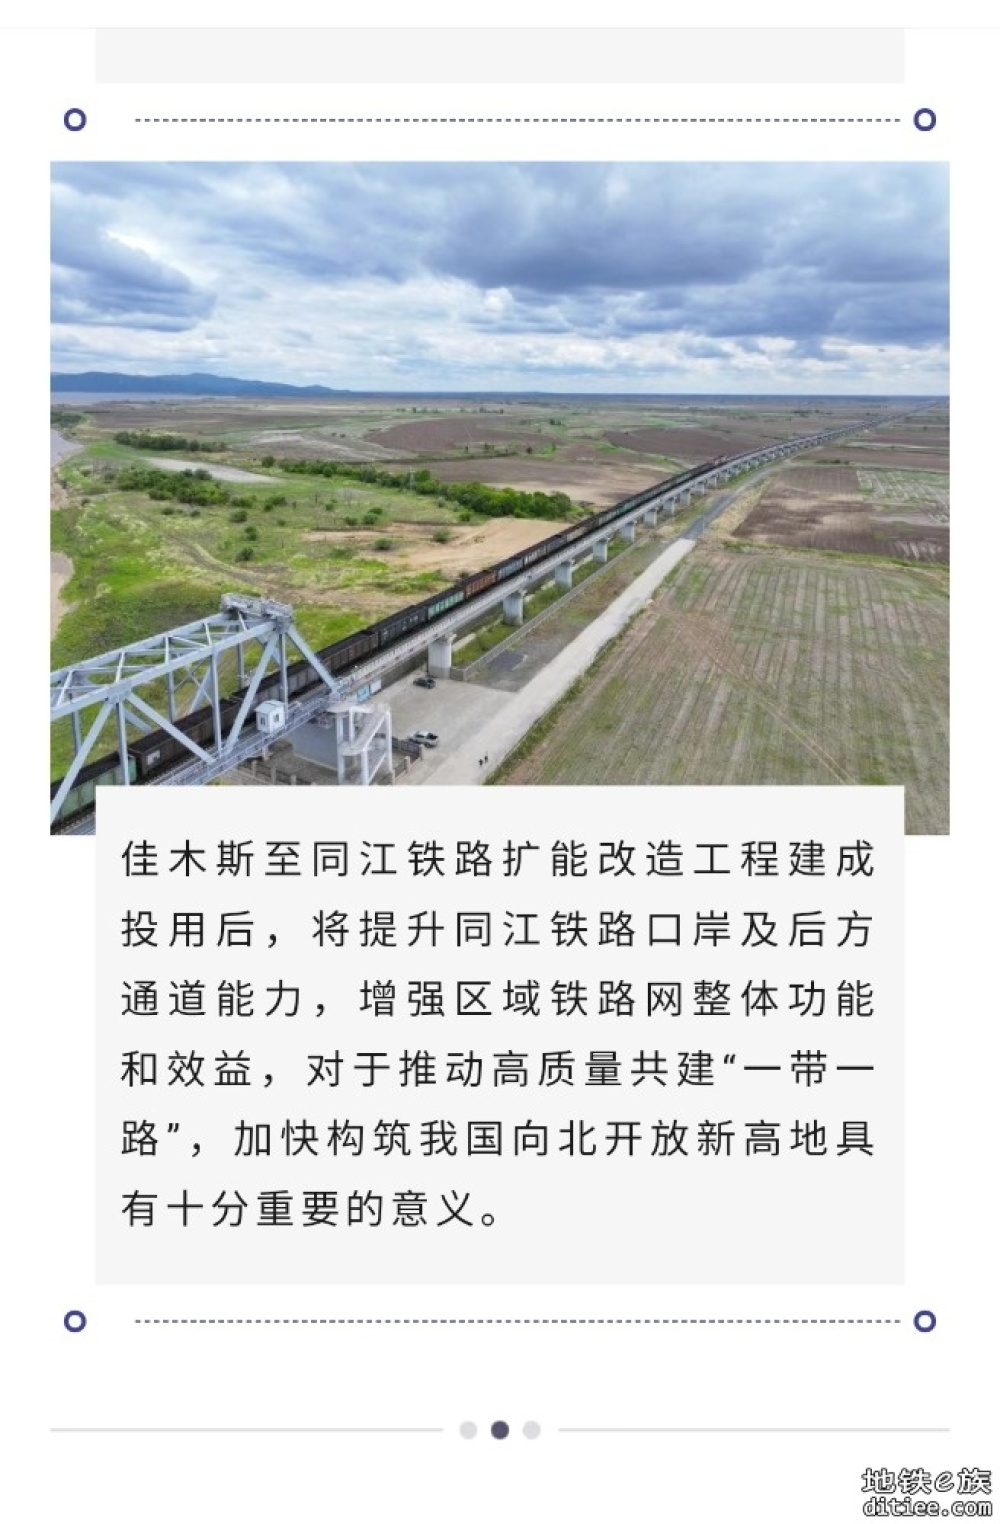 佳木斯至同江铁路扩能改造工程 5月28日开建，总工期为3年